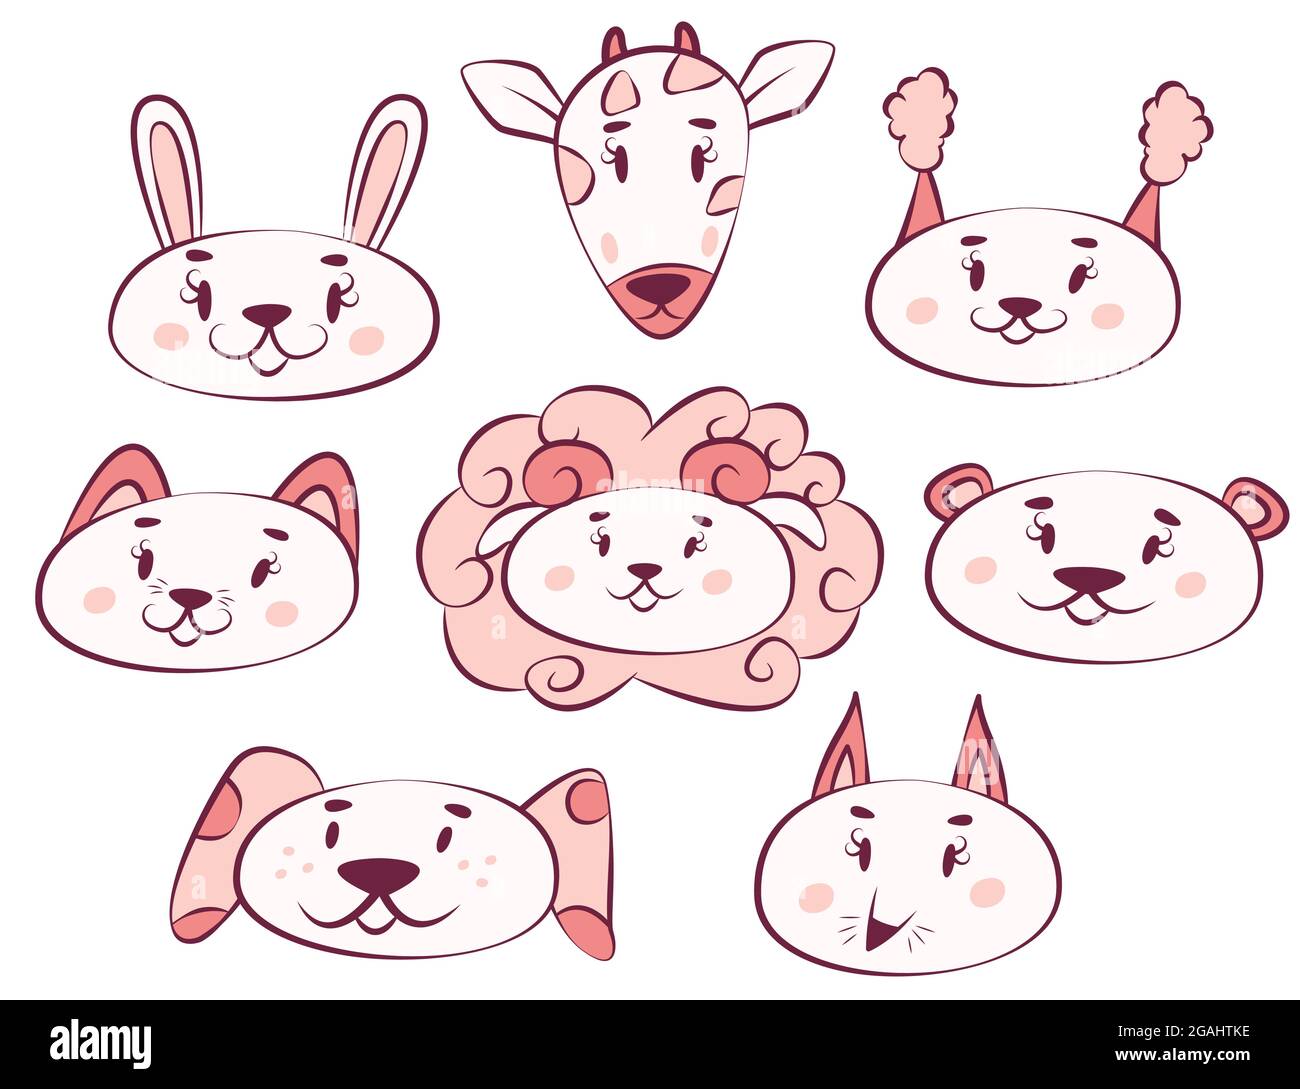 Set mit niedlichen und lustigen Gesichtern von verschiedenen Tieren. Coole Kawaii Cartoon Prints für T-Shirts, Rucksäcke, Bezüge, Tassen. Bild für Verpackung, Logo Stock Vektor